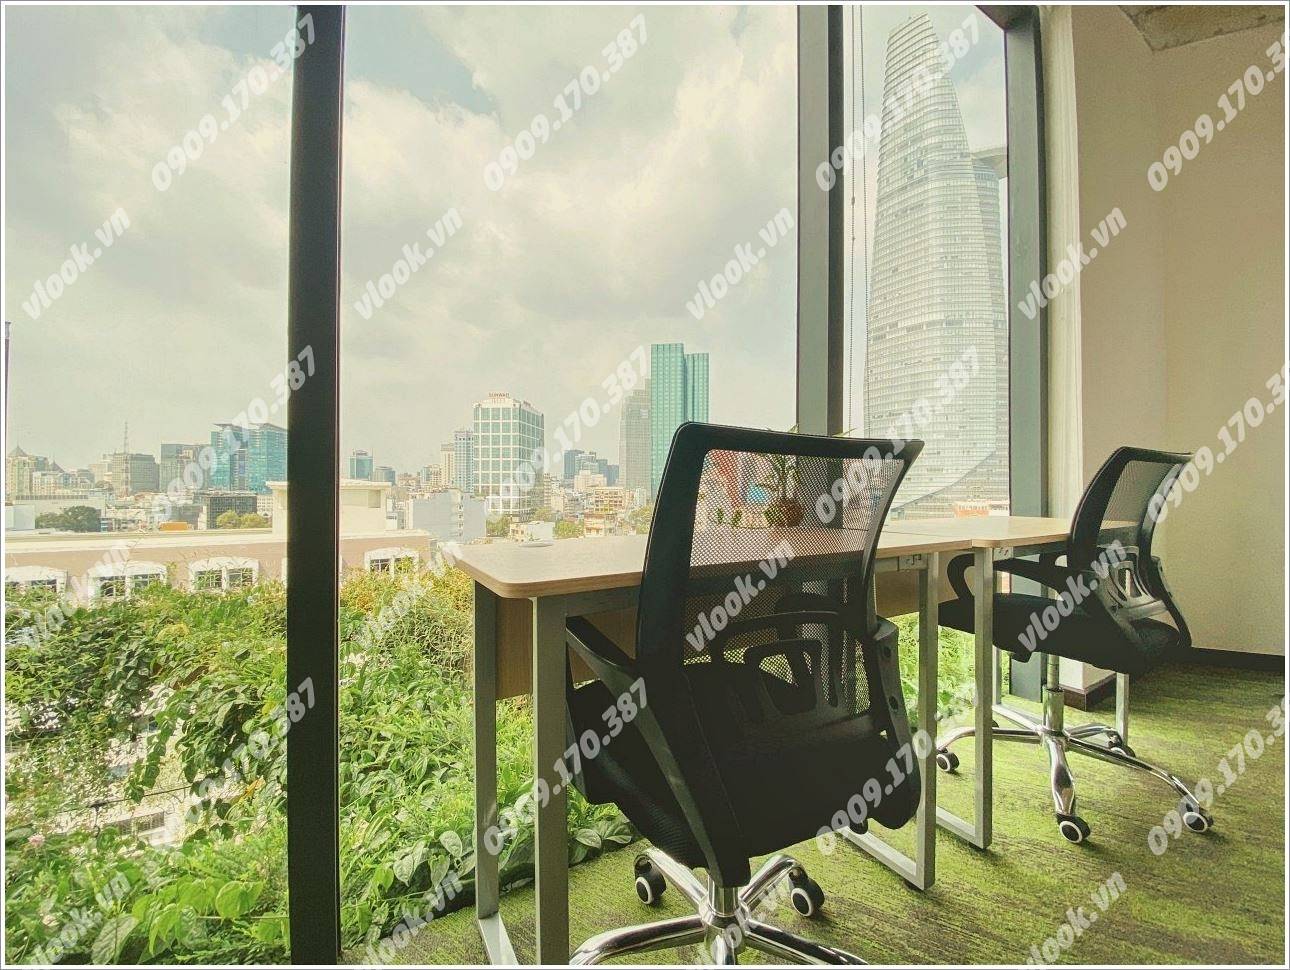 Cao ốc văn phòng cho thuê tòa nhà Kairos Hàm Nghi, Quận 1, TP.HCM - vlook.vn